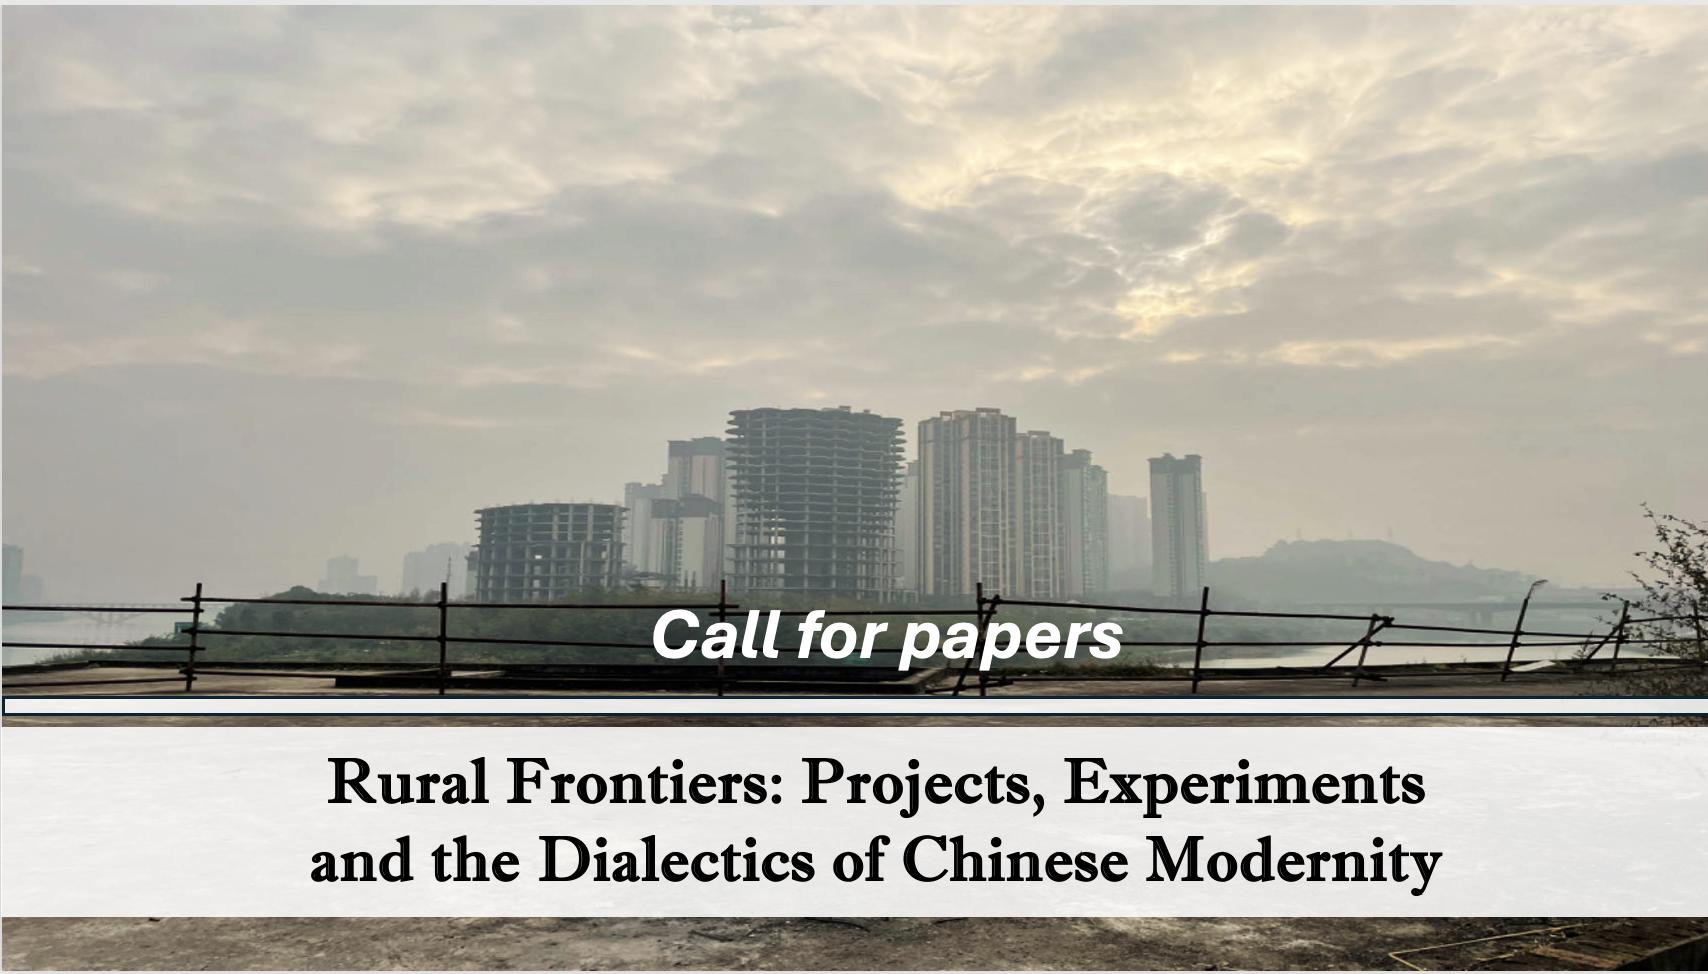 征集论文： Special Issue/Edited Volume “Rural Frontiers: Projects, Experiments, and the Dialectics of Chinese Modernity”